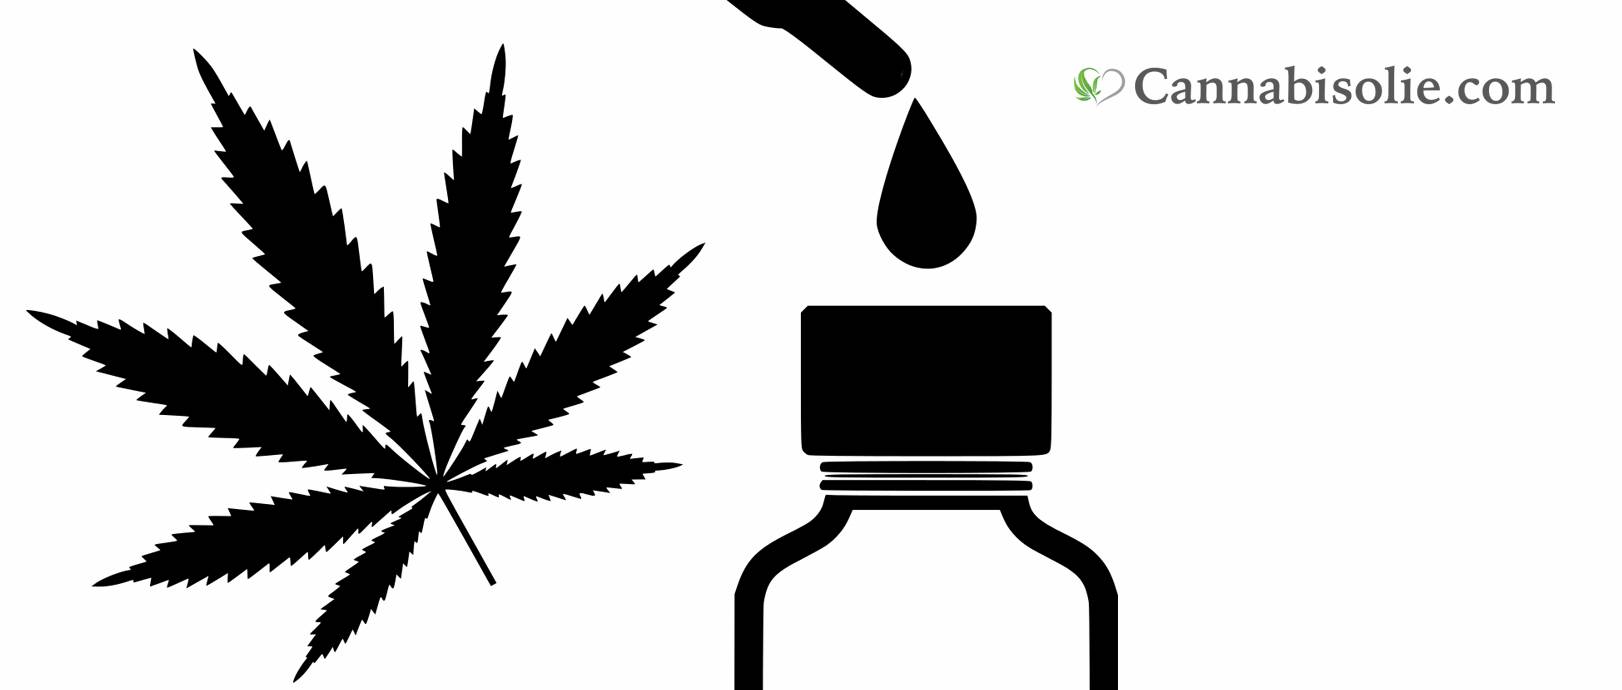 Op zoek naar cannabis olie? De beste CBD olie voor 2021 vindt u hier!